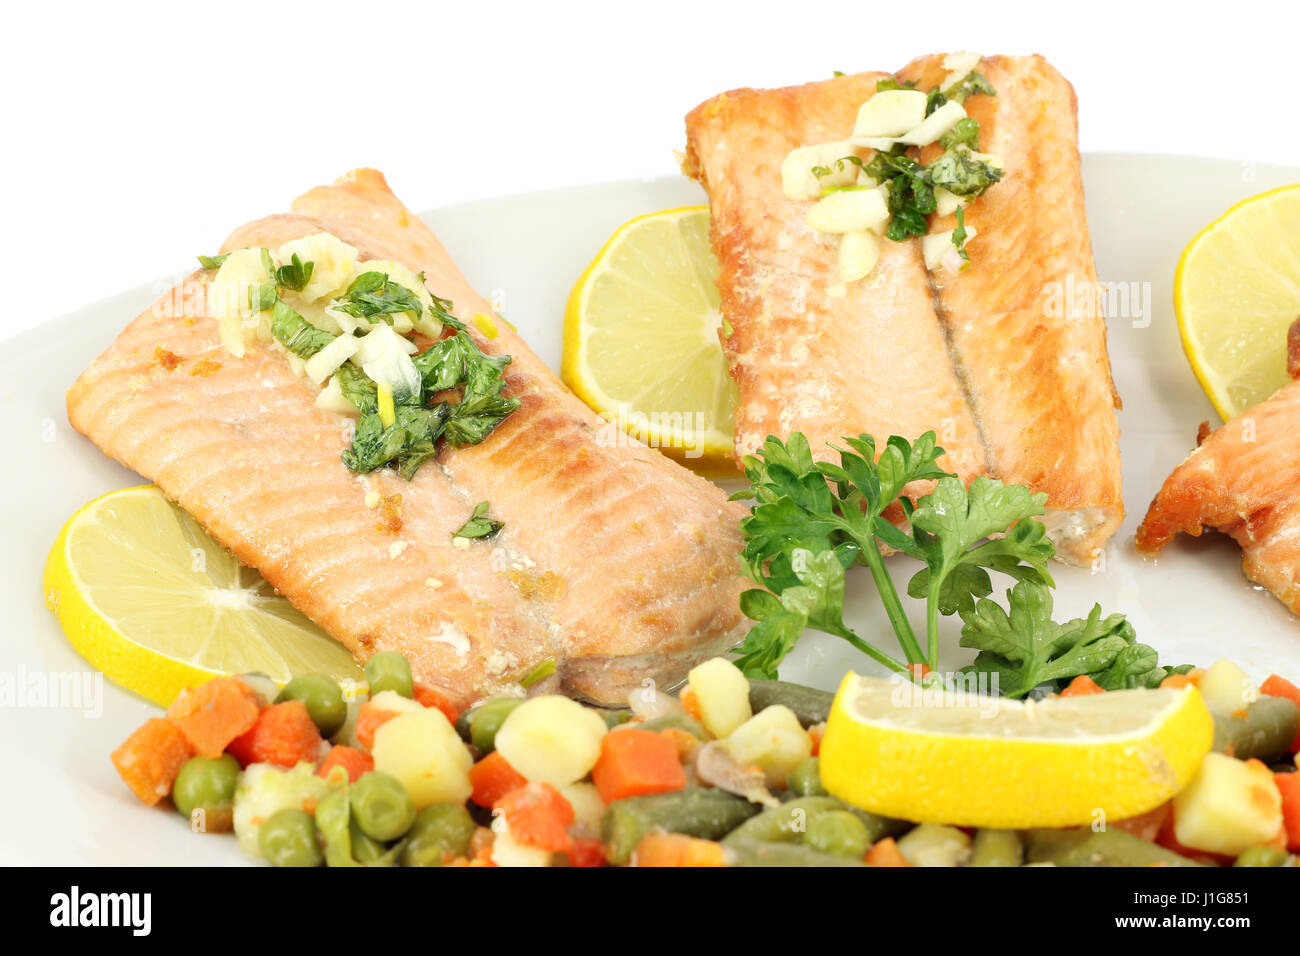 seafood salmon with salad and lemon Stock Photo